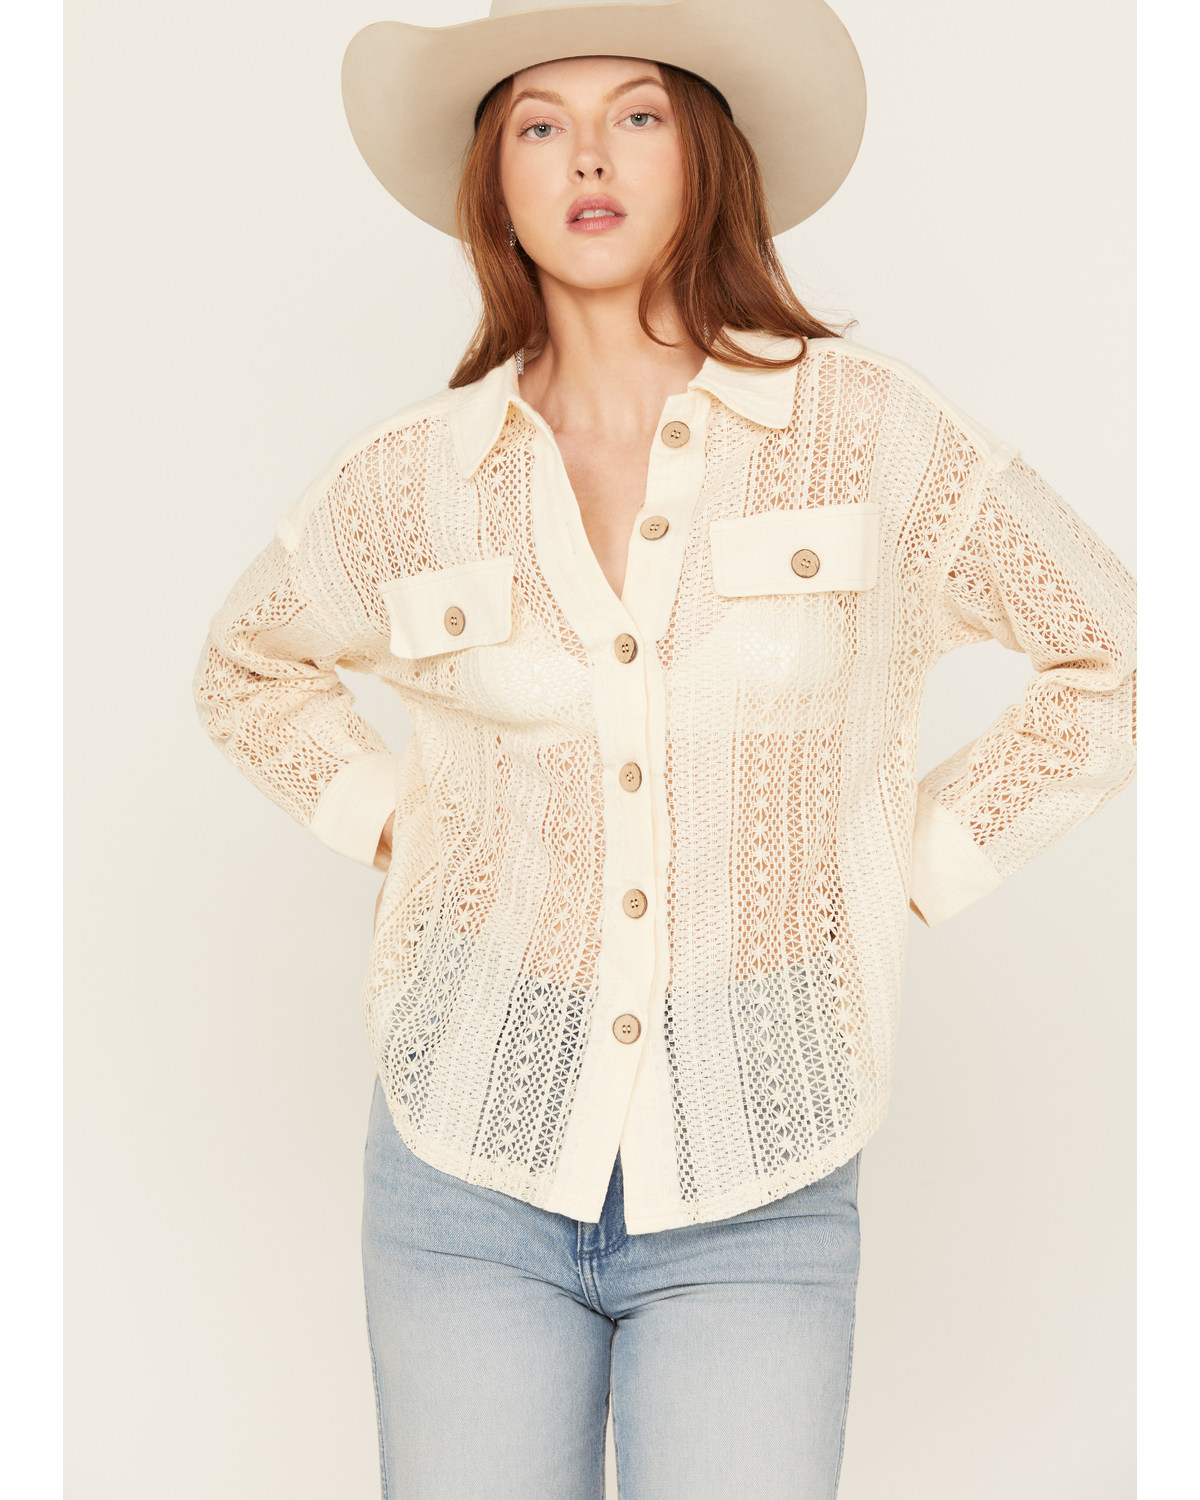 Very J Women's Crochet Button-Down Shirt